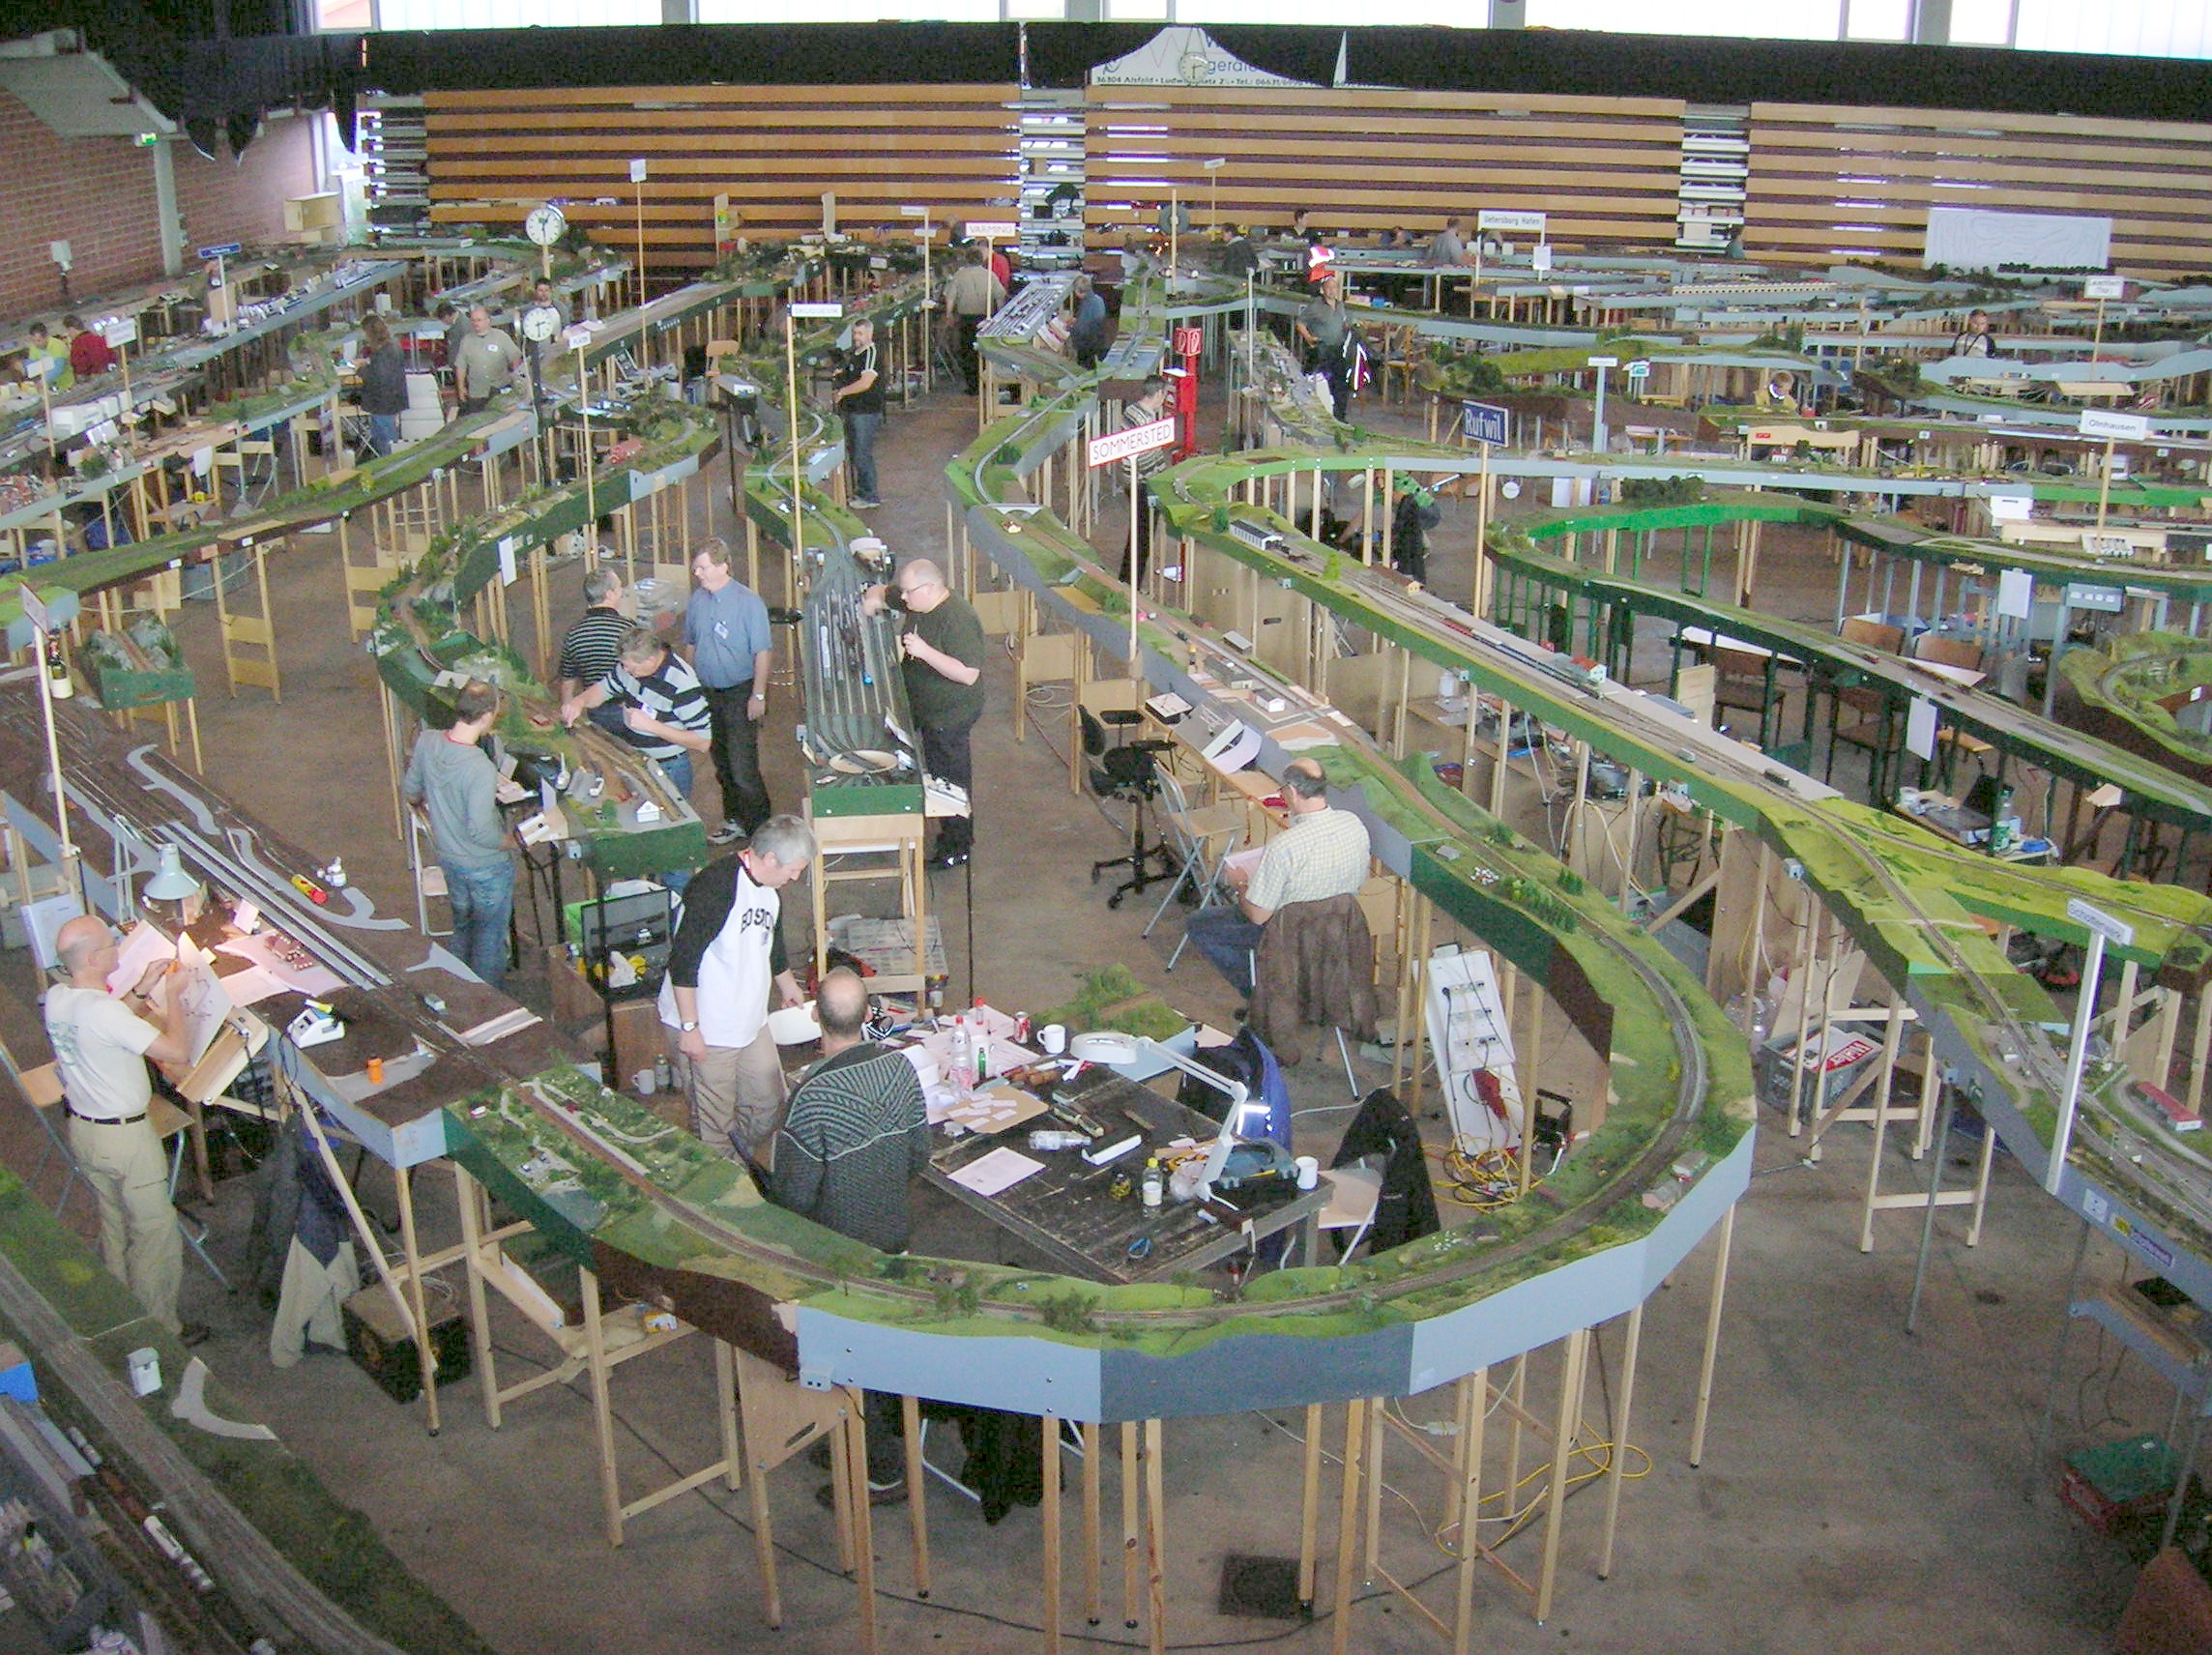 Ein riesige Modelleisenbahn wurde von mehreren Menschen in einer Halle aufgebaut.